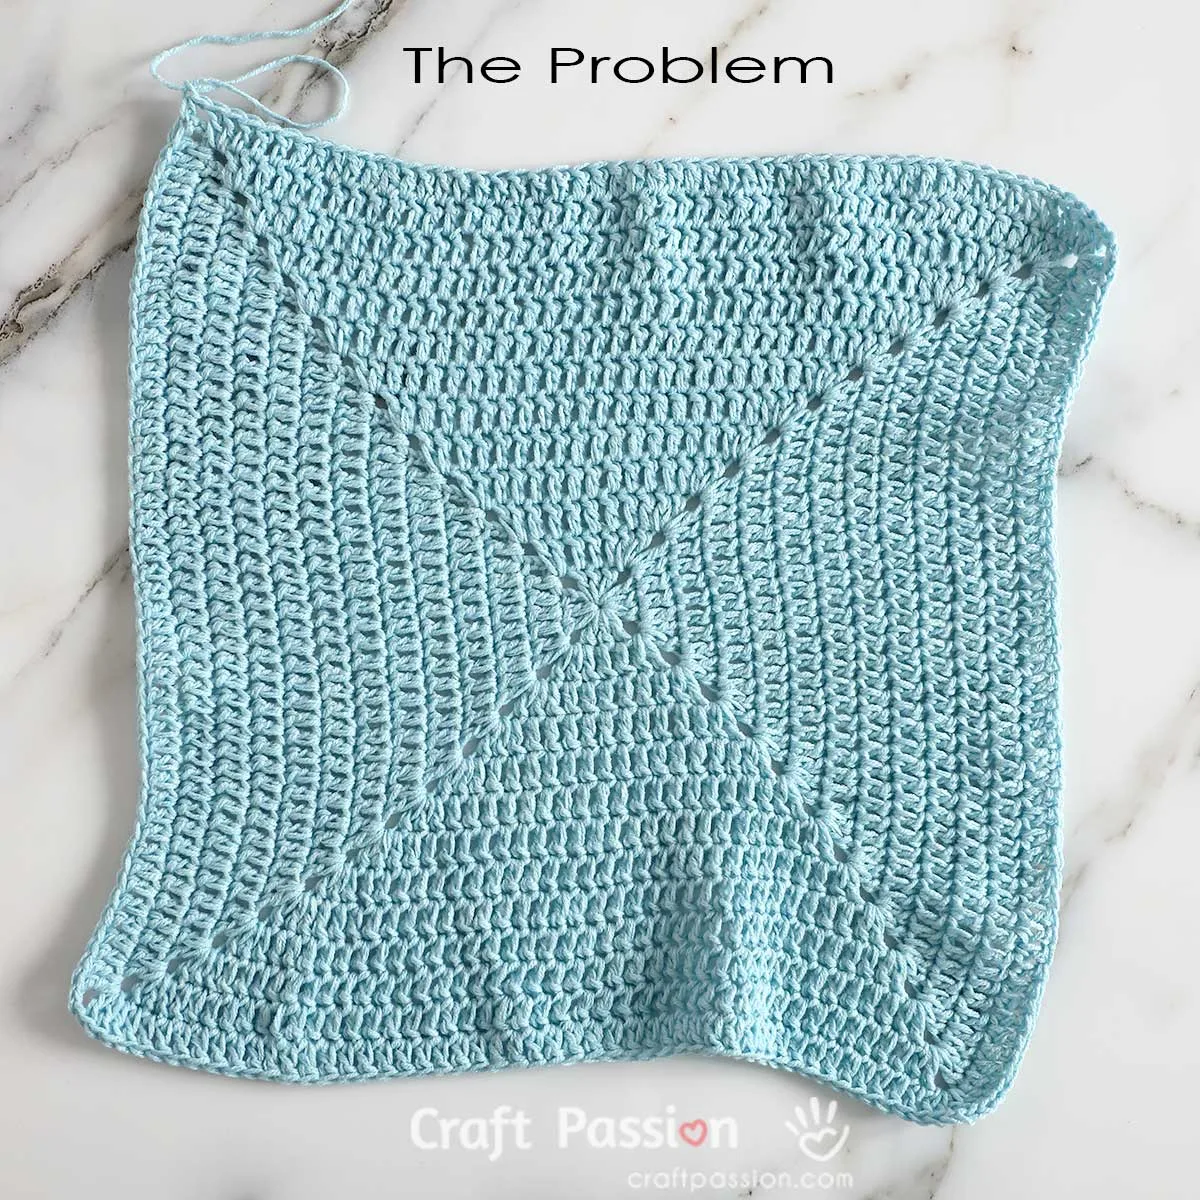 common problem of crochet bigger granny square